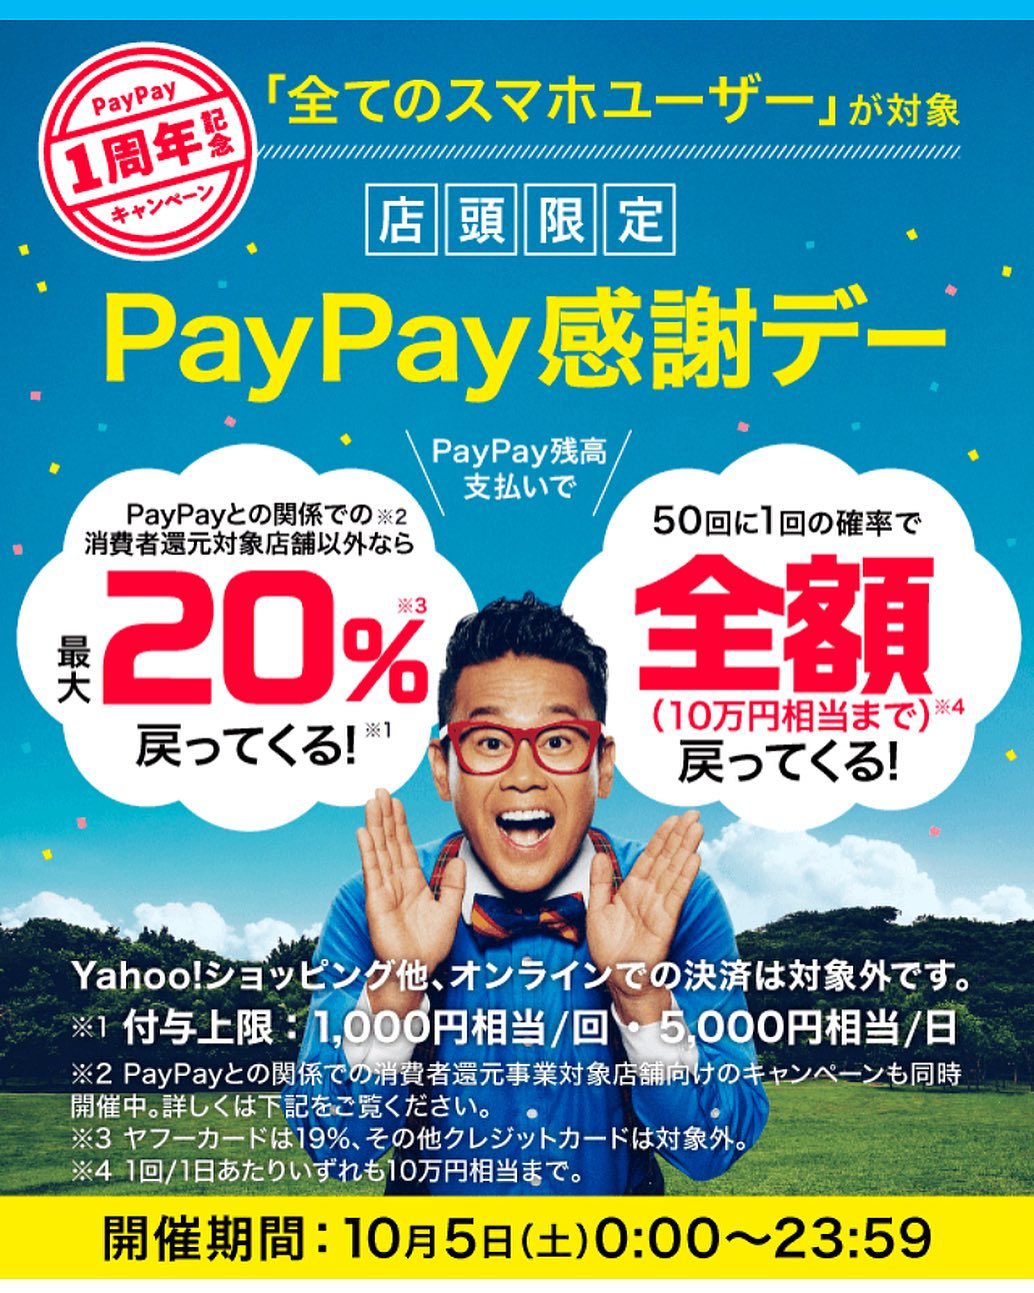 10/5(土) PayPay1周年記念感謝Day開催!!